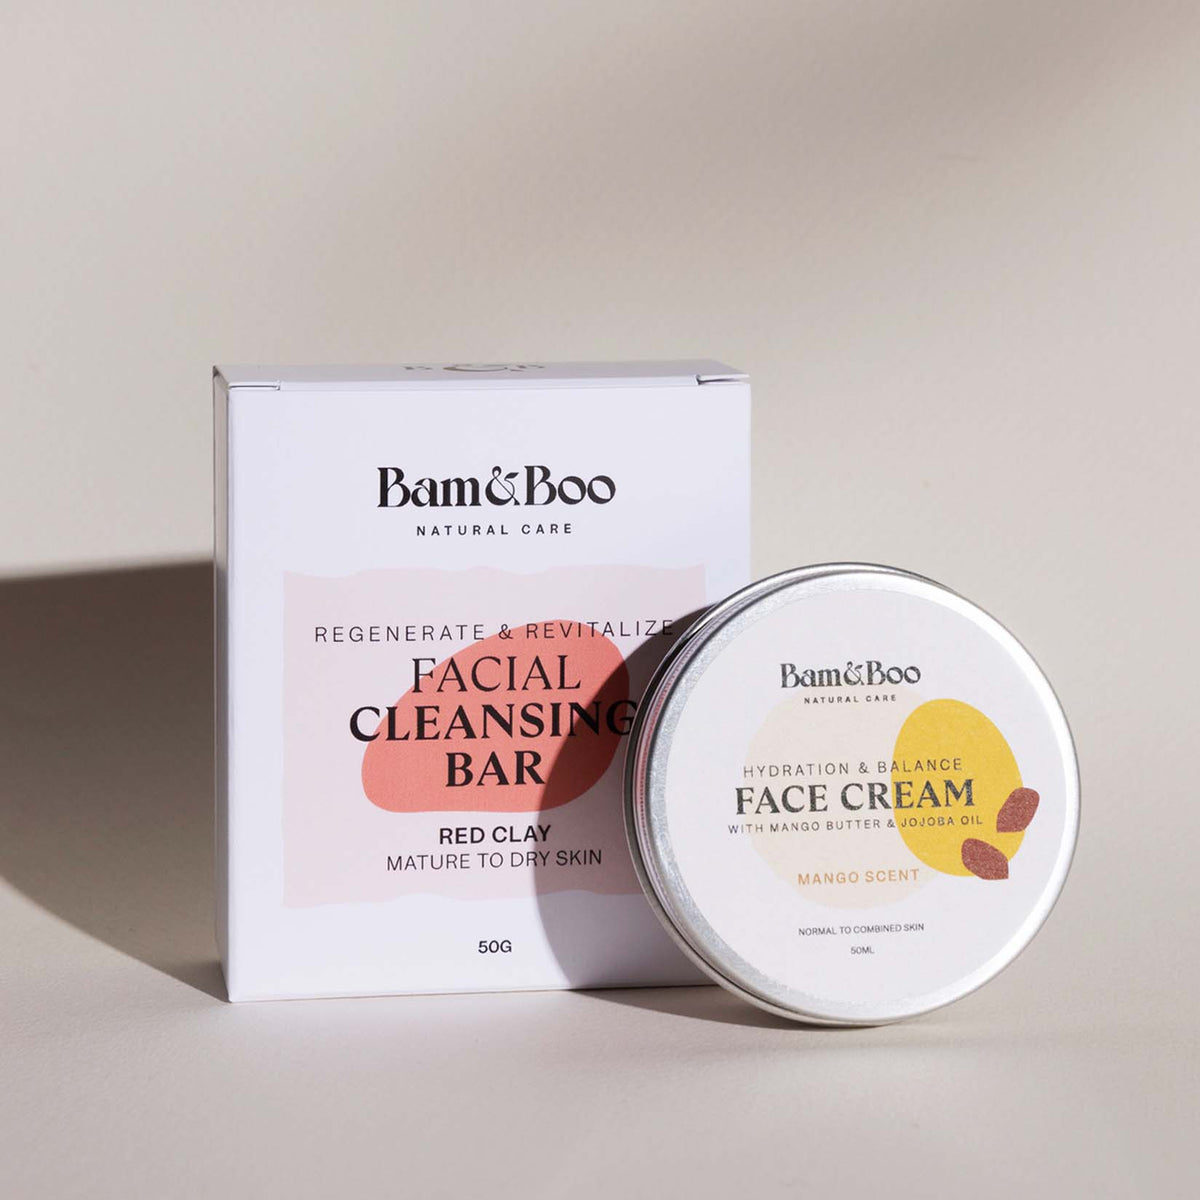 KIT | Beauty Fatale - Face Cream & Face Cleansing Bar - Bam&Boo - Eco-friendly, vegan, cuidados orais e pessoais sustentáveis